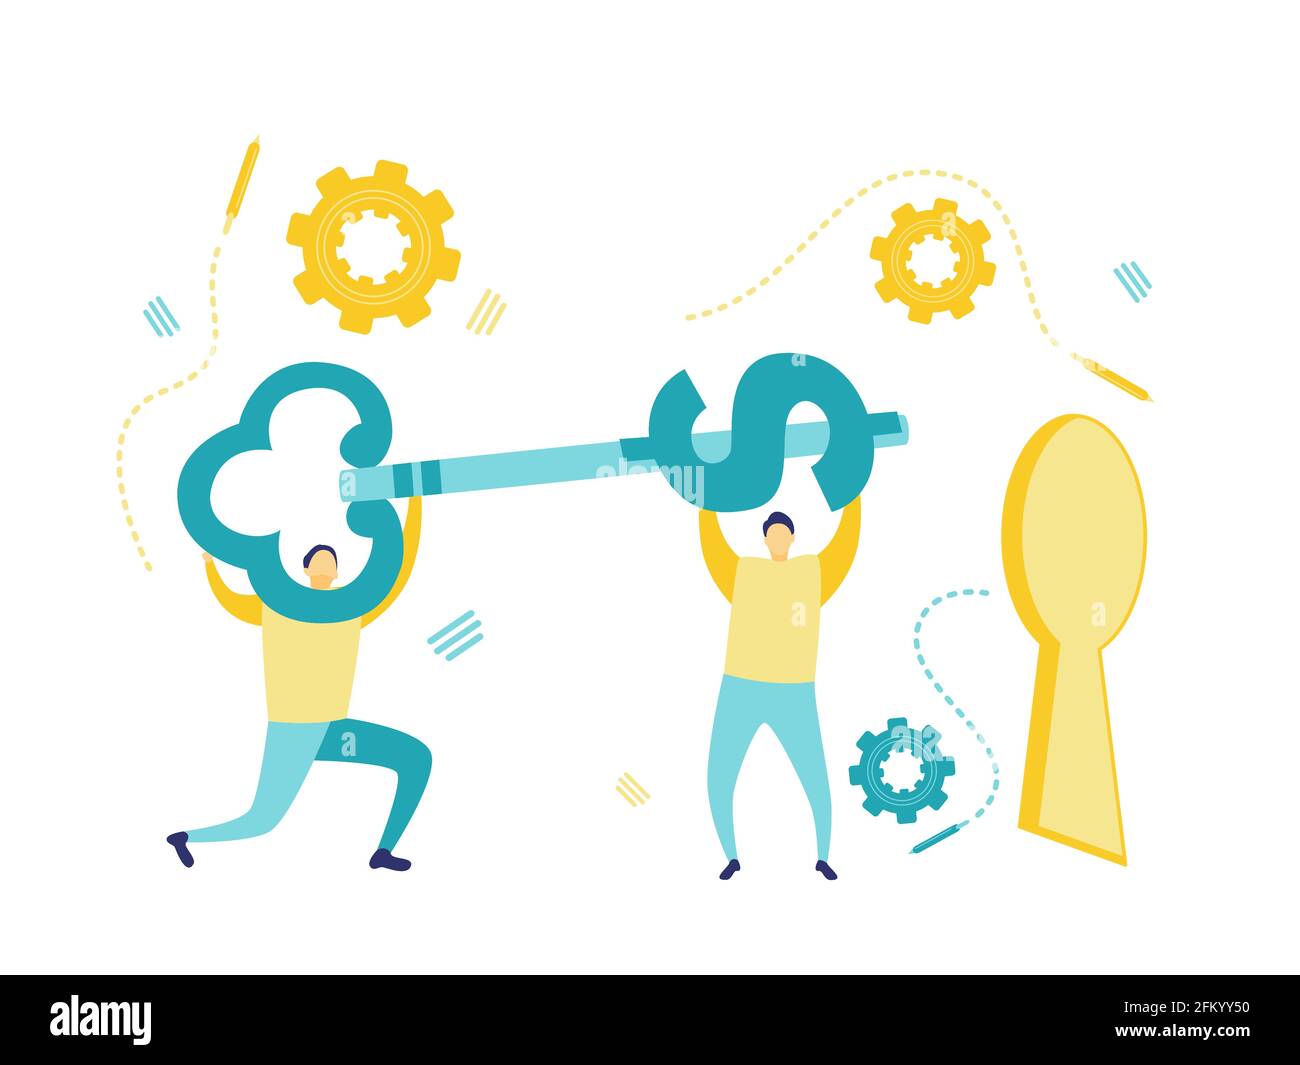 Flache Abbildung von zwei Geschäftsleuten, die einen Dollarschlüssel halten, um ihn in das Schlüsselloch einzuführen. Teamwork-Konzept. Geschäfts- und Finanzkonzepte. Stock Vektor